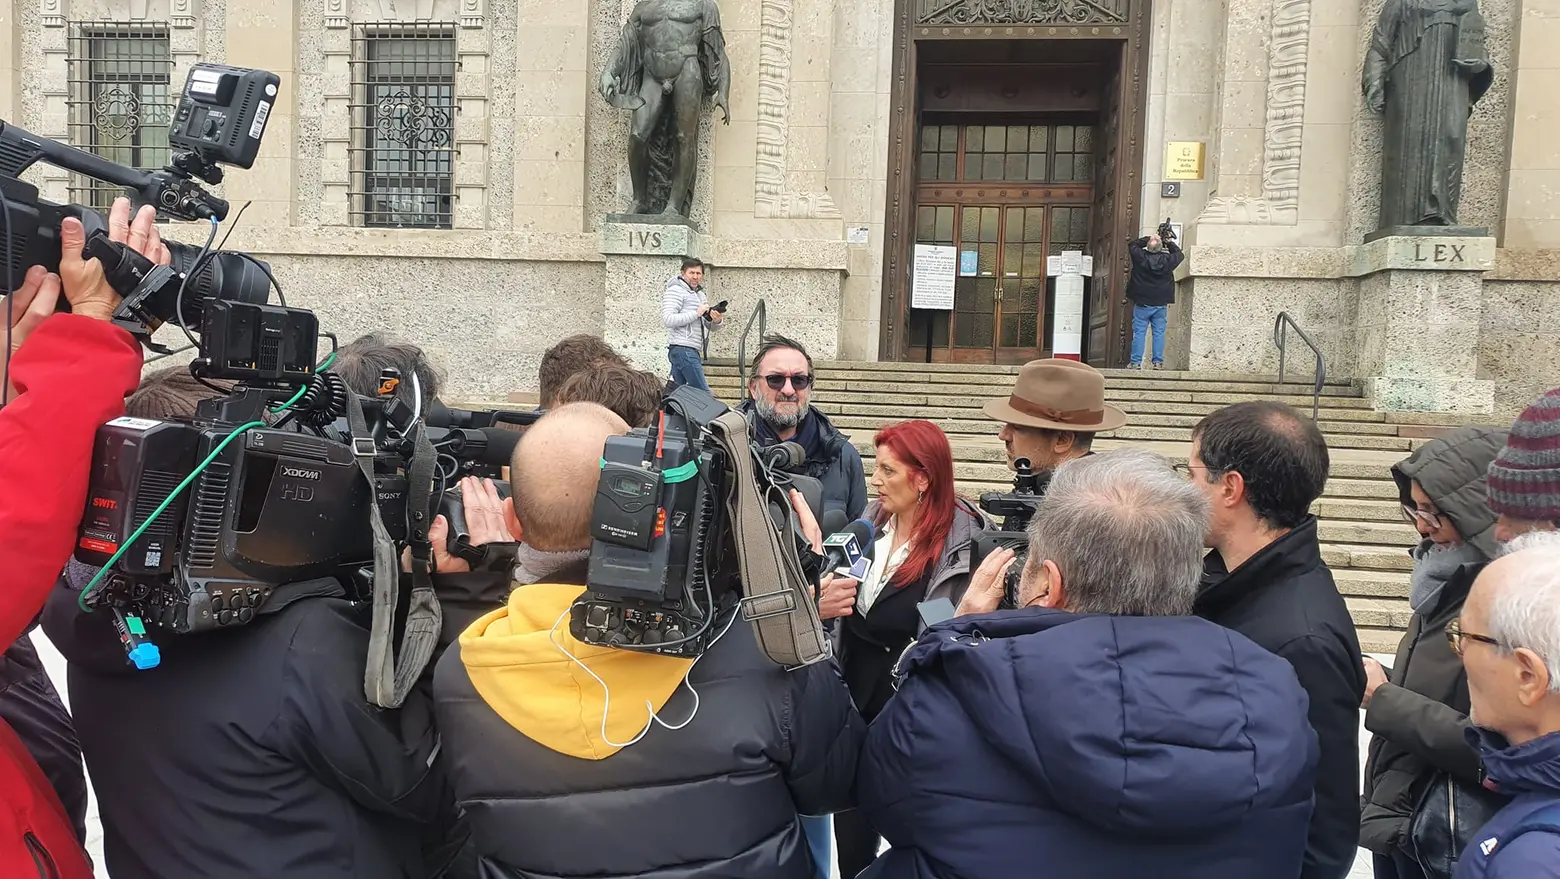 Consuelo Locati accerchiata dalle telecamere questa mattina al palazzo di giustizia di Bergamo